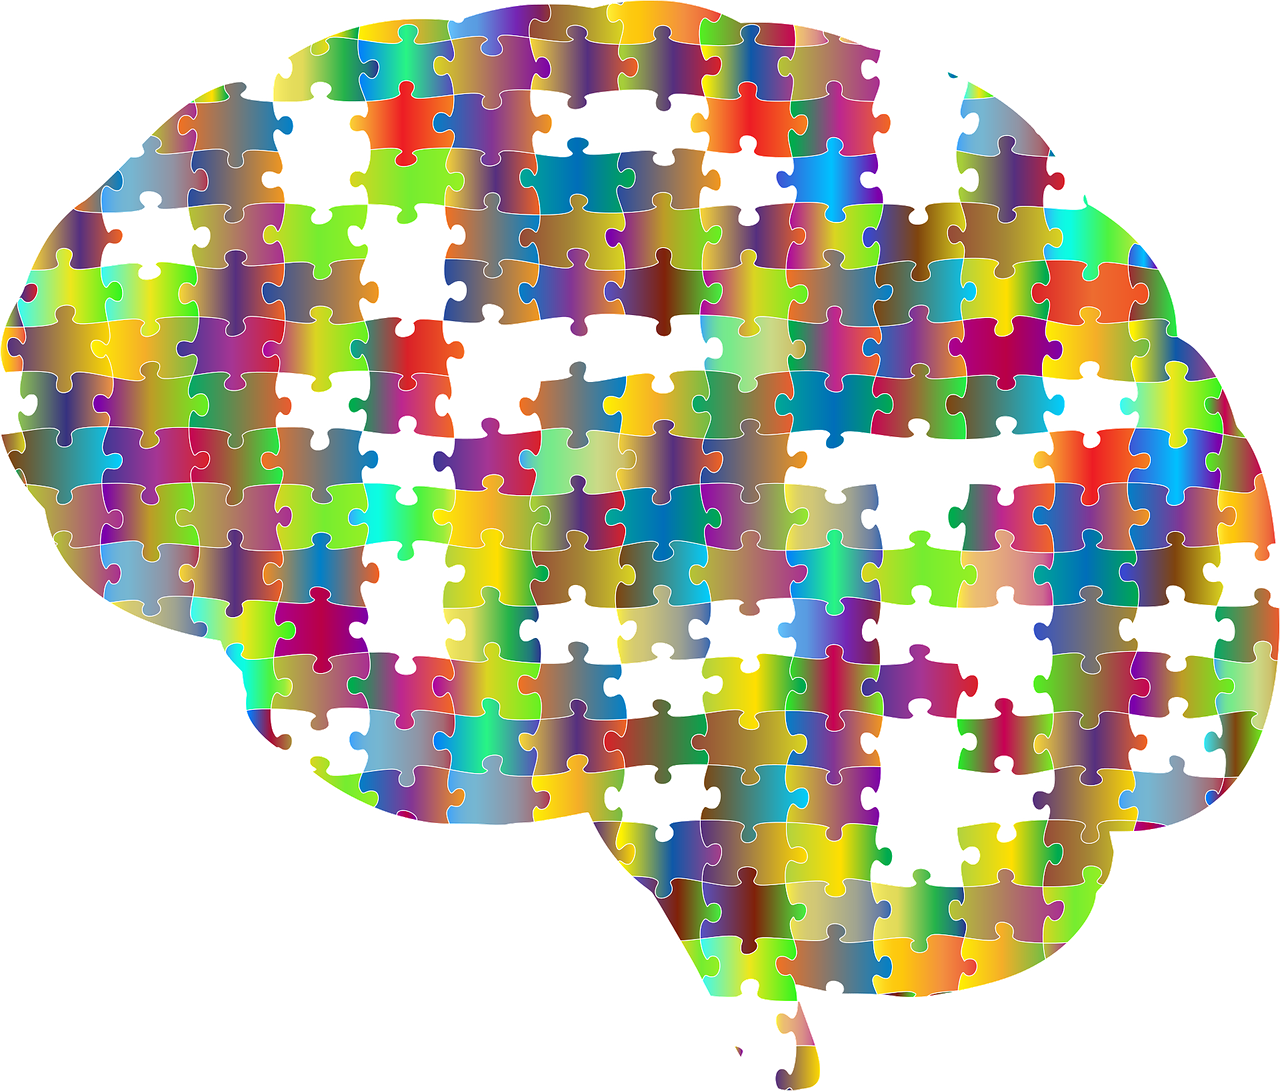 Hafıza Teknikleri ile Beyni Etkin Kullanma